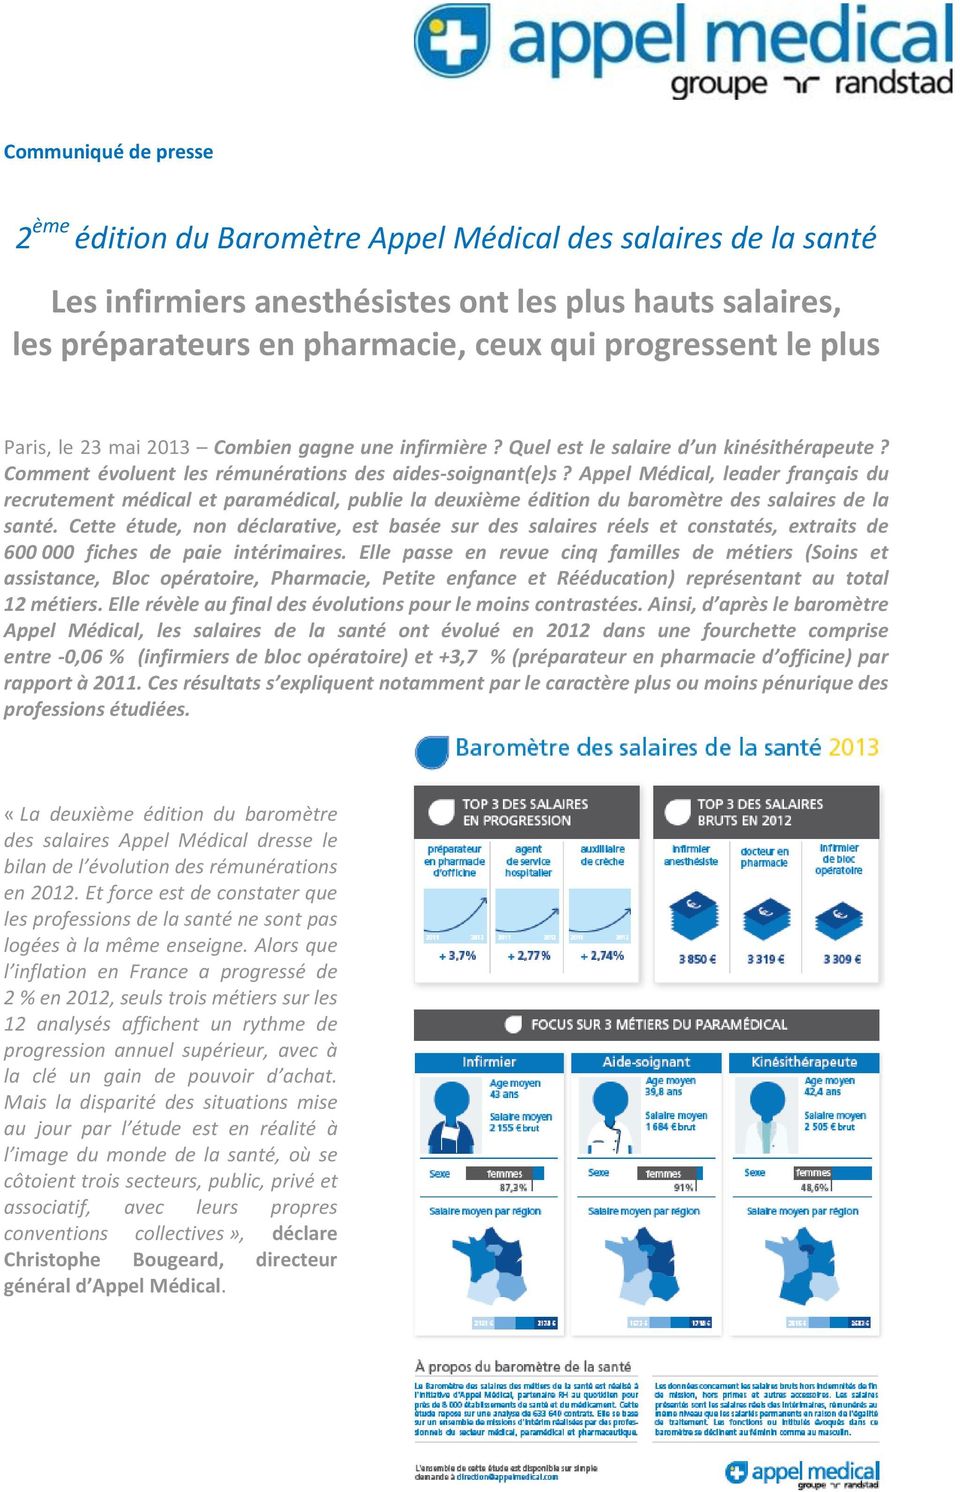 Appel Médical, leader français du recrutement médical et paramédical, publie la deuxième édition du baromètre des salaires de la santé.